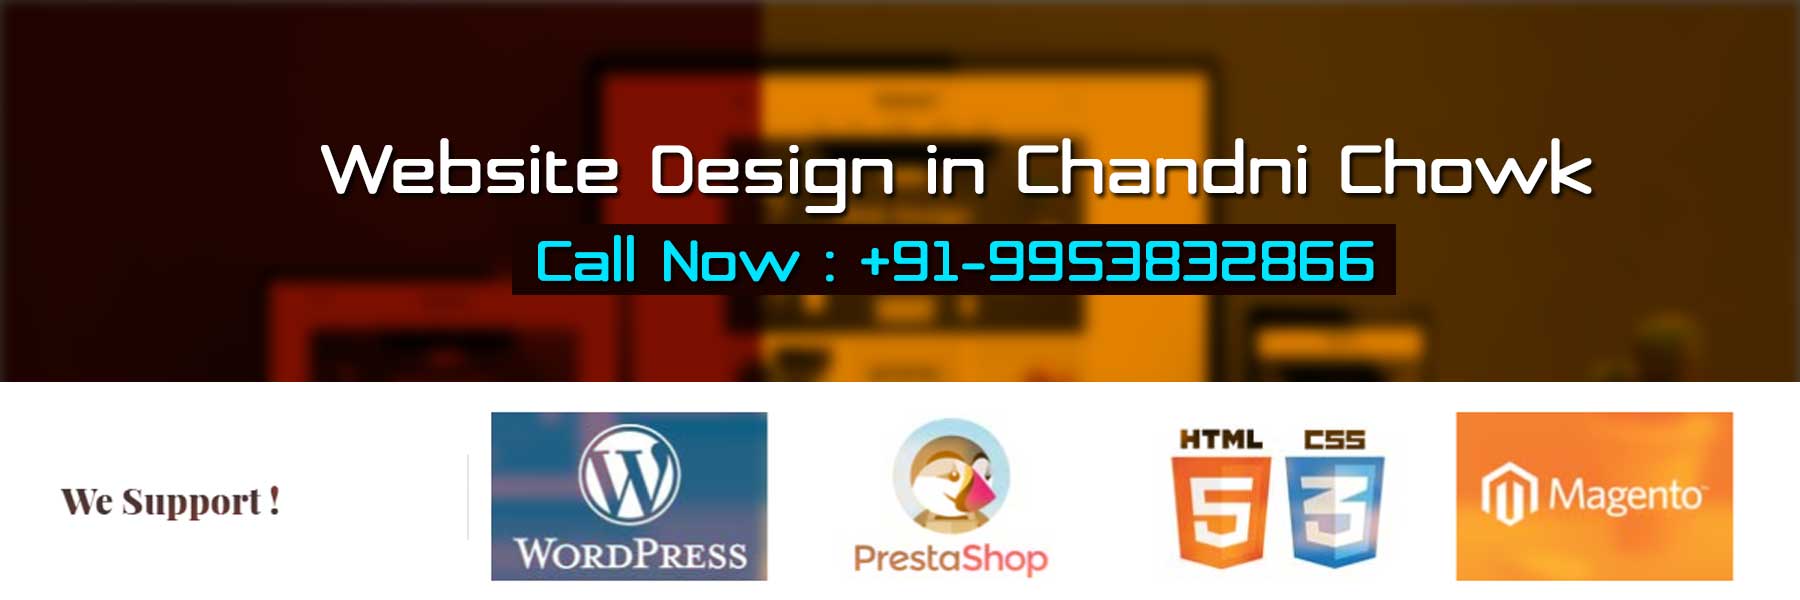 Website Design in Chandni Chowk